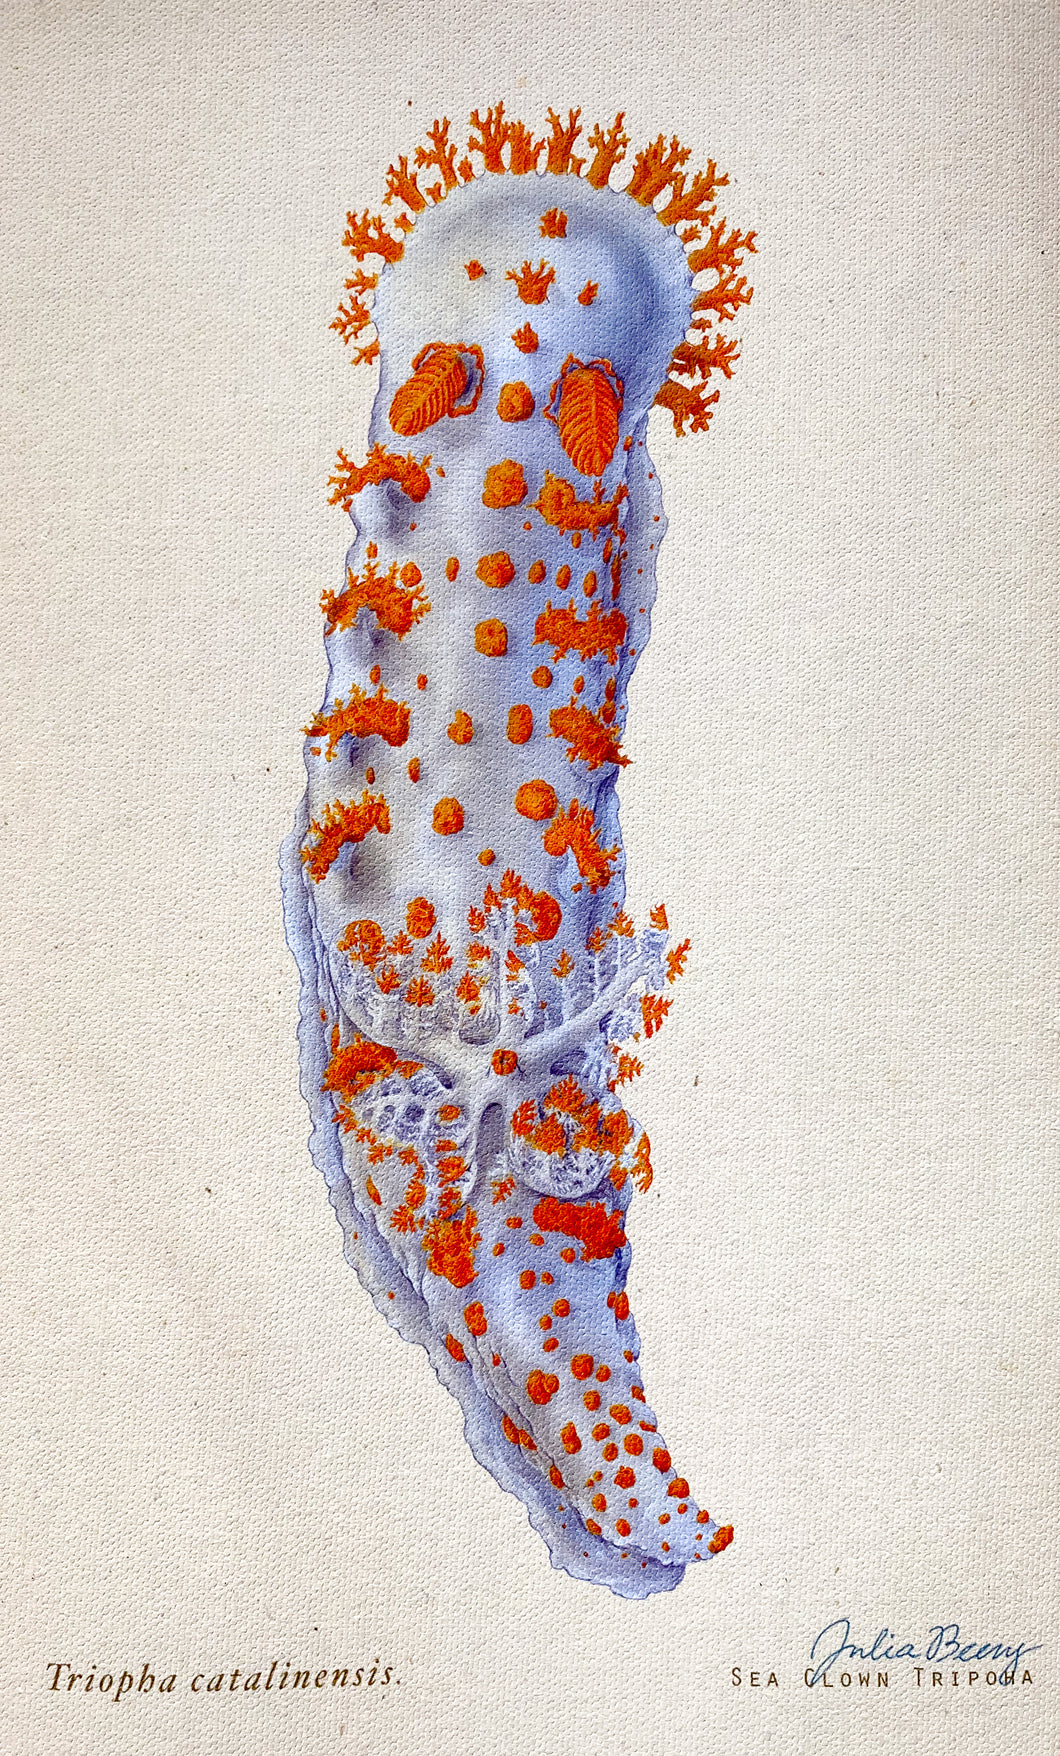 Sea Clown (Triopha catalinae) Giclée Print